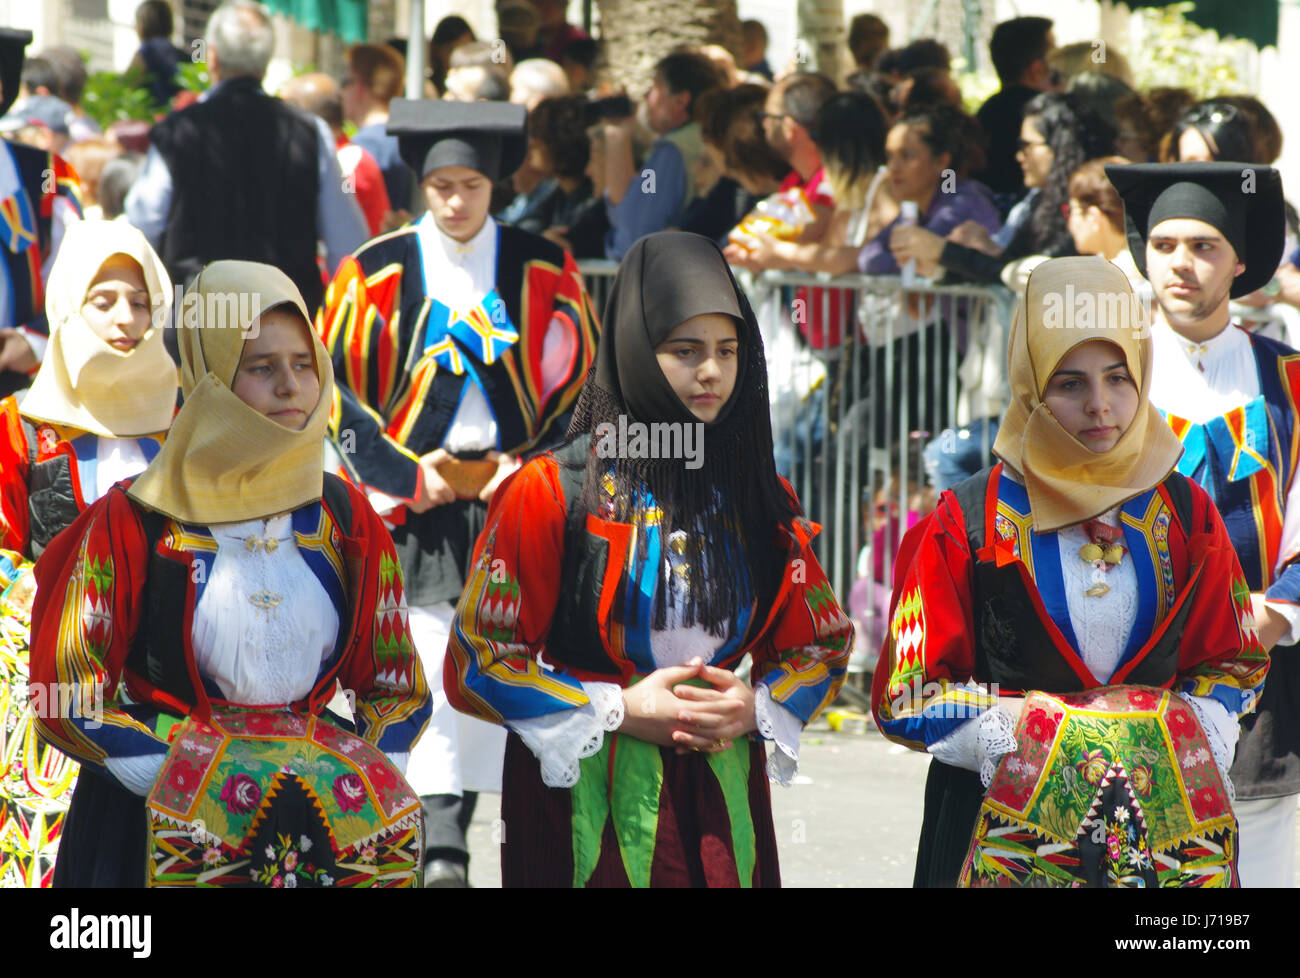 Sassari, Sardaigne. Cavalcata Sarda 2017, traditionnel défilé de costumes et les cavaliers de toute la Sardaigne. Costume de Orgosolo Banque D'Images